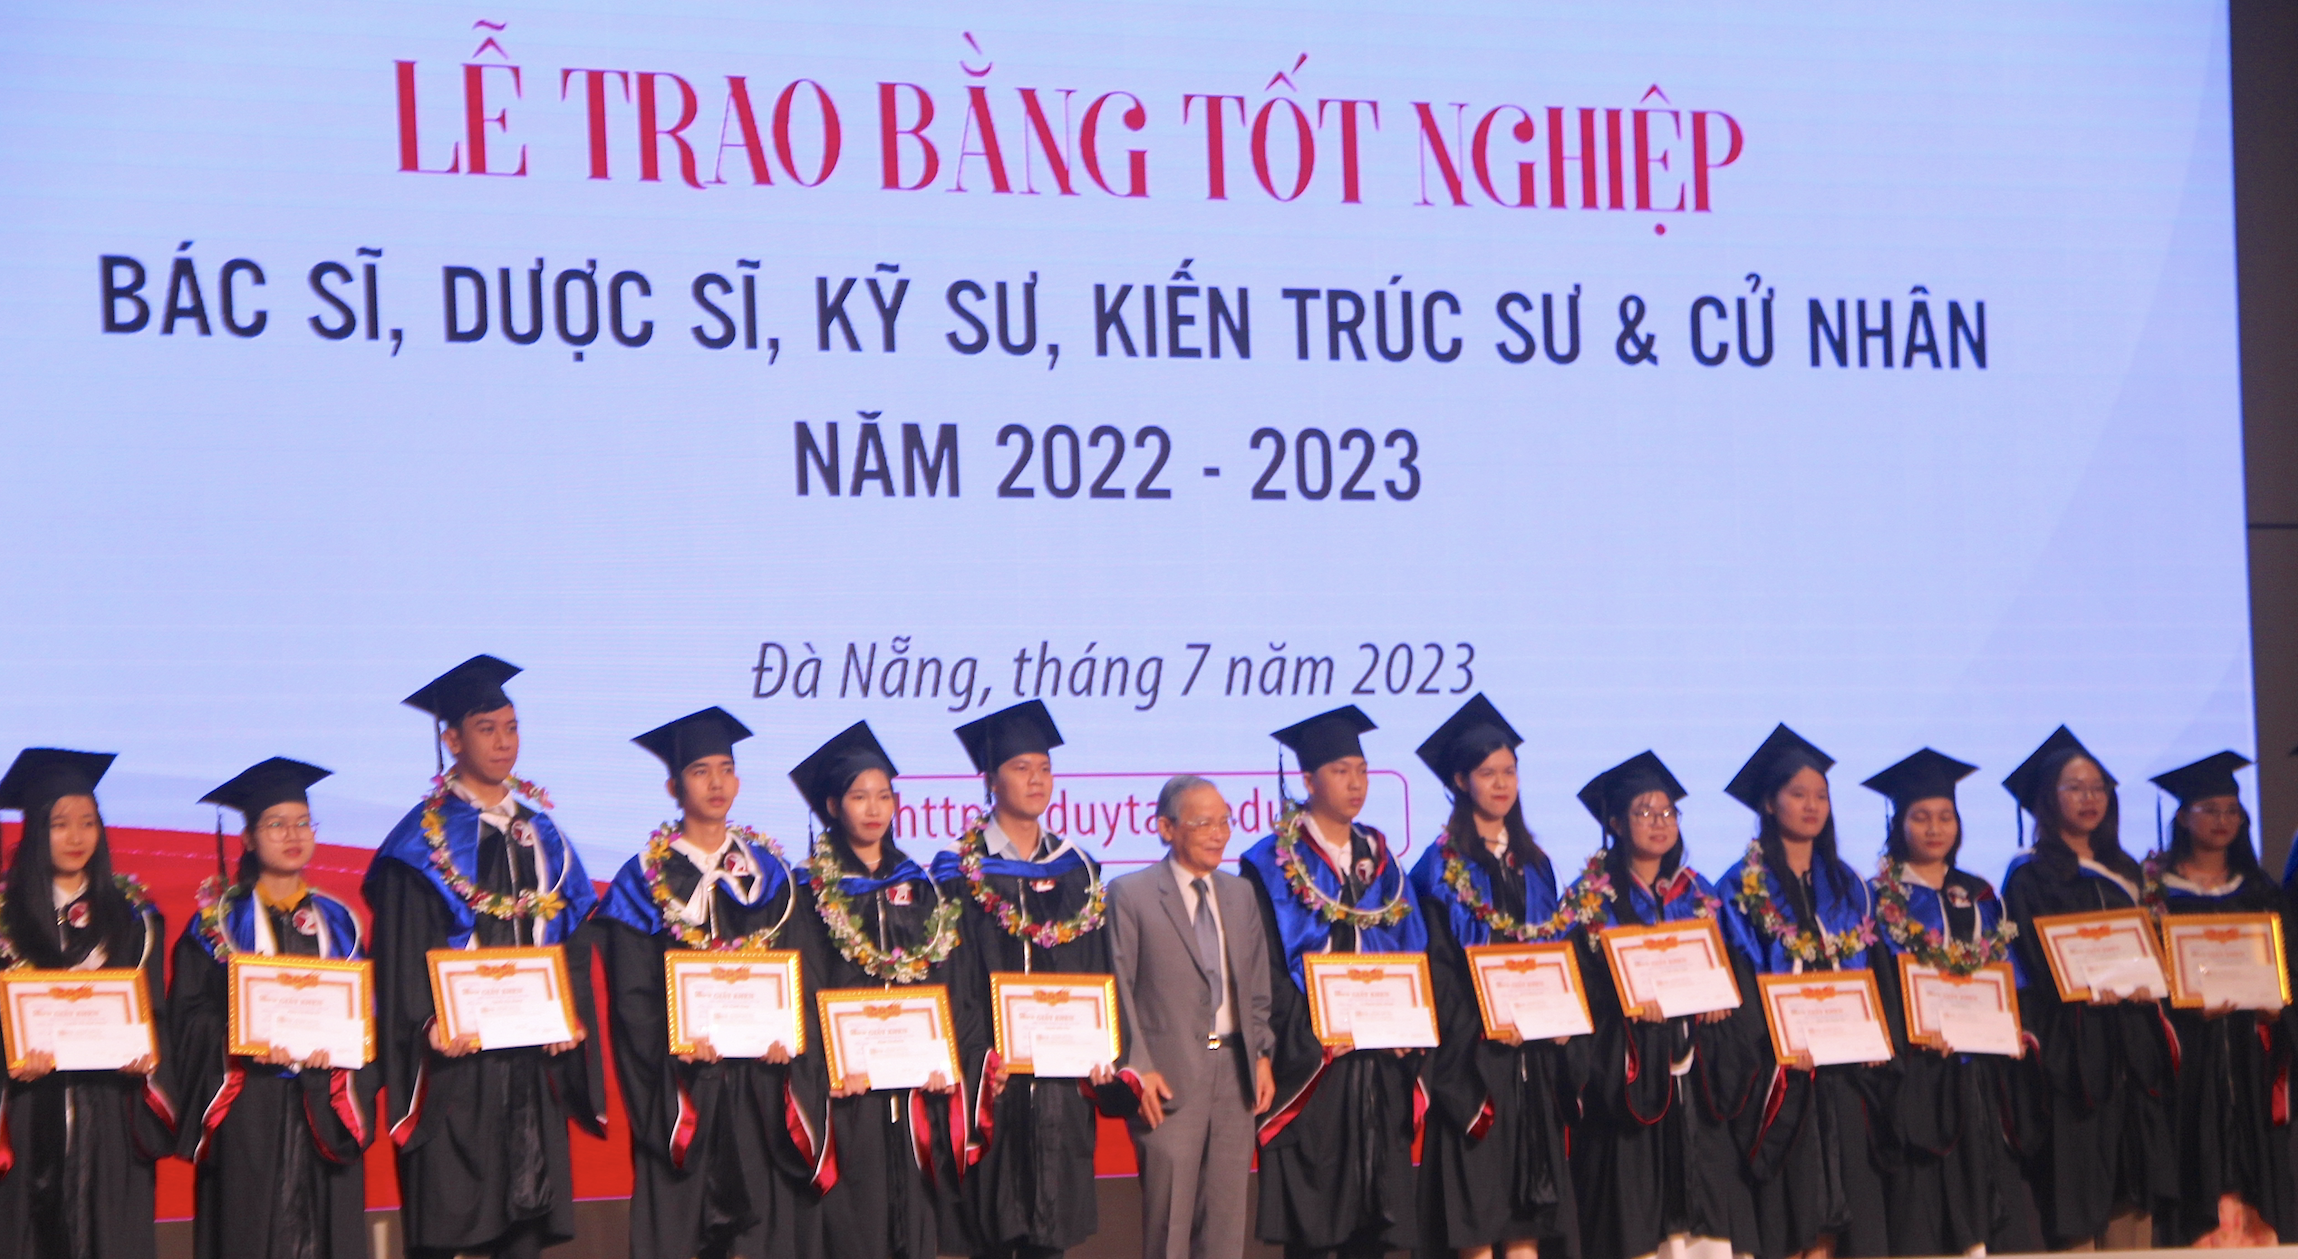 Đại học Duy Tân tổ chức lễ trao bằng tốt nghiệp Tiến sĩ, Thạc sĩ, Bác sĩ, Dược sĩ, Kỹ sư, Kiến trúc sư và cử nhân năm học 2022 - 2023. Ảnh: Mai Hương